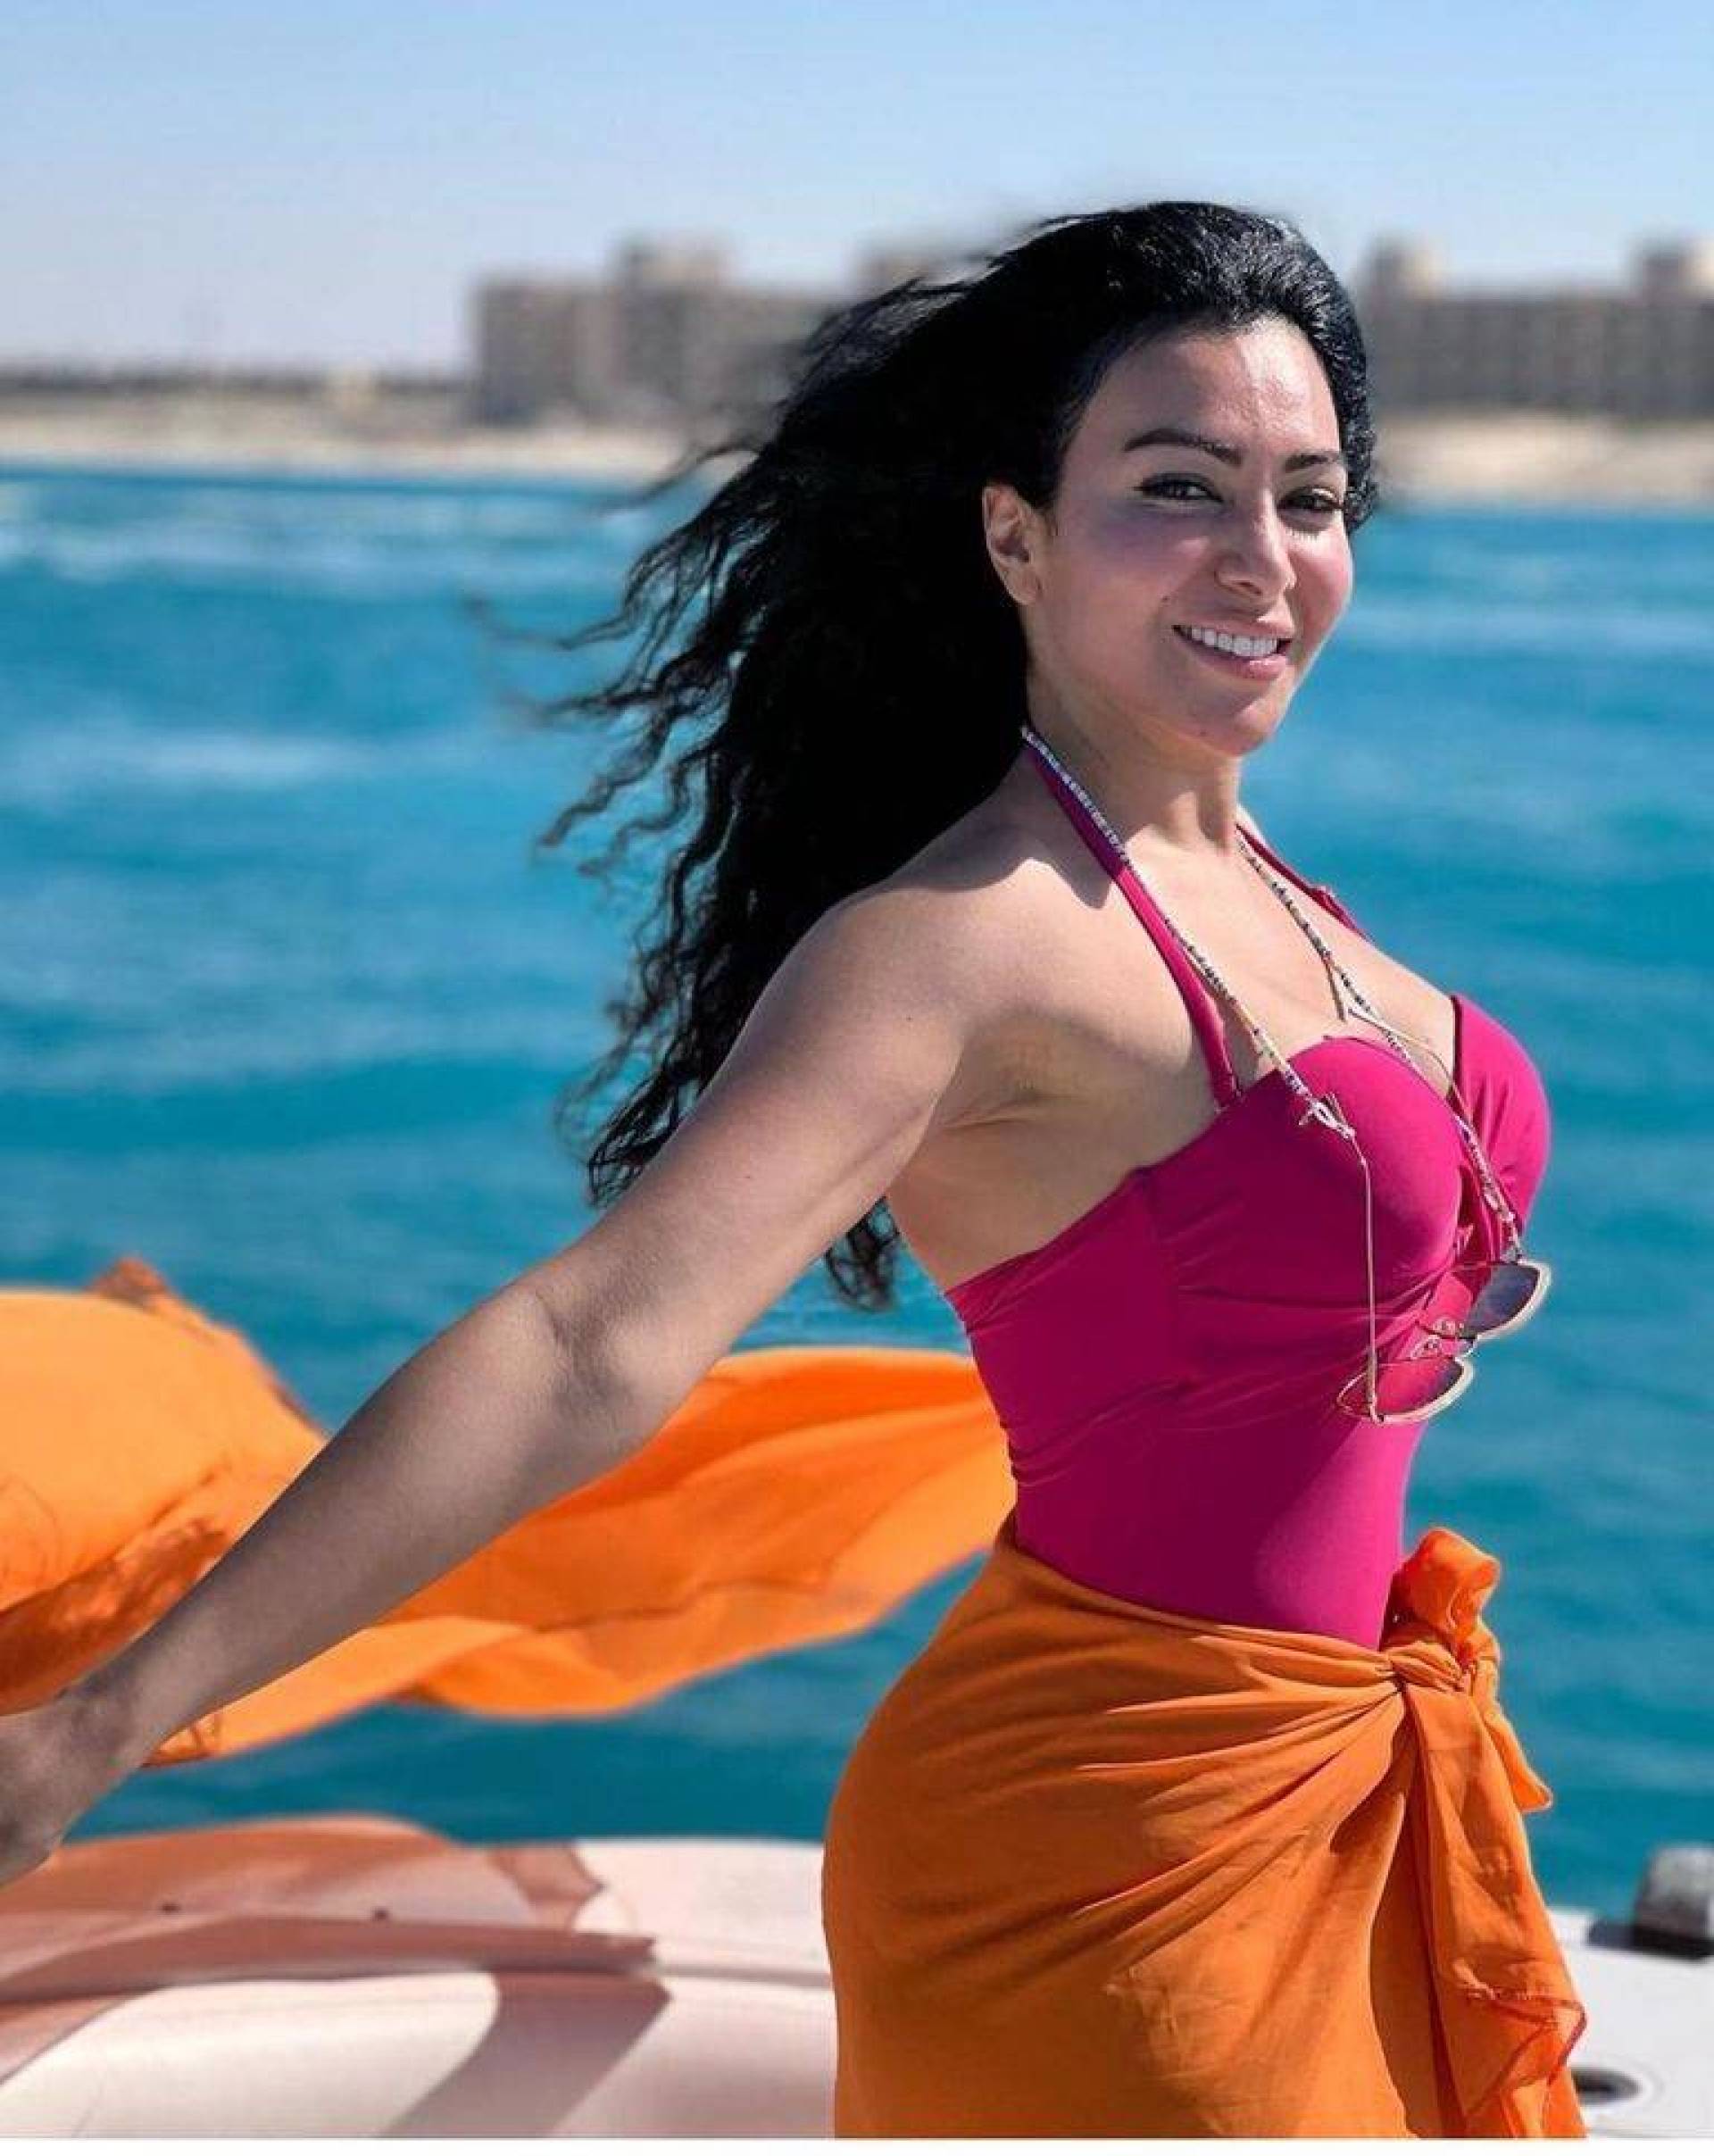 ميرهان حسين تُحدث ضجة بما قالته عن صورها على الشاطئ | شوفي نيوز